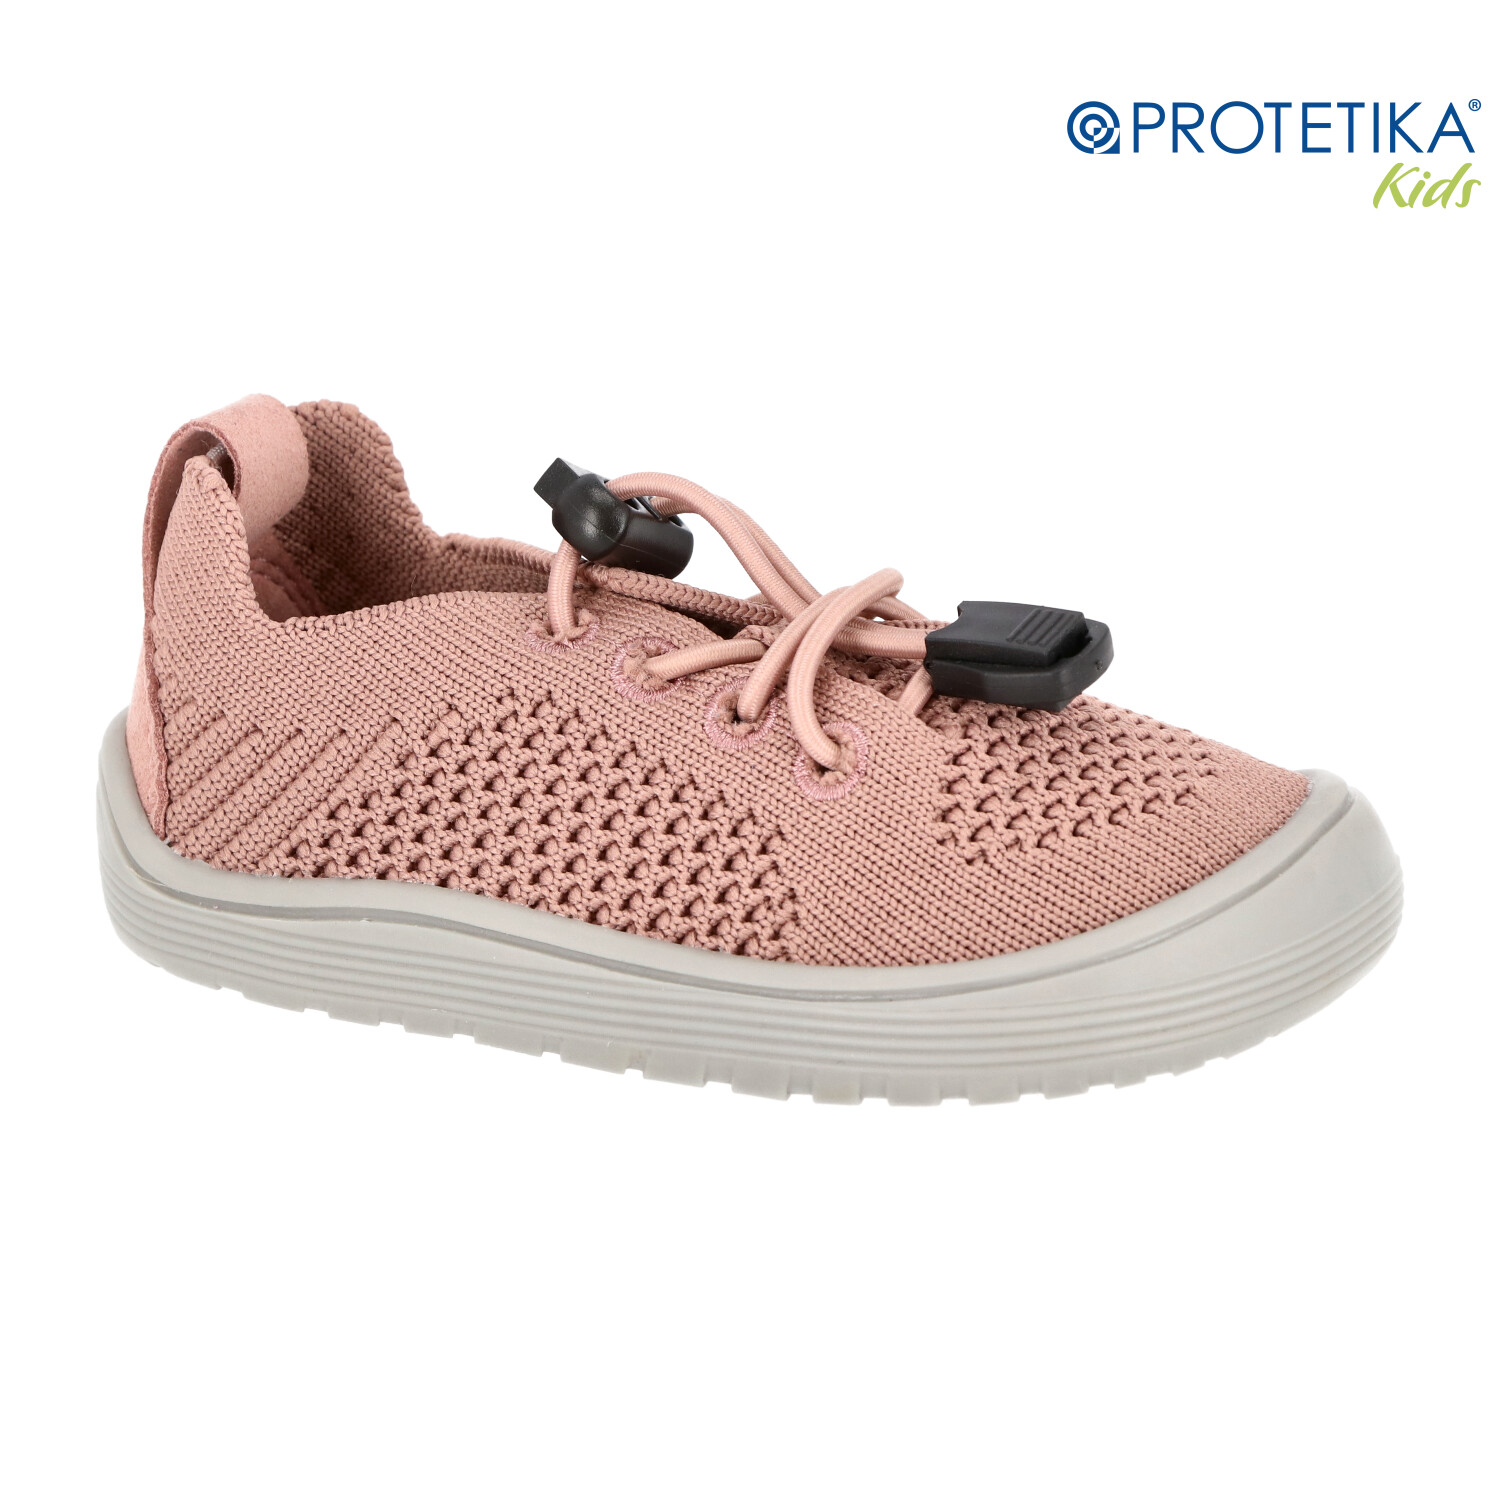 Protetika - barefootové topánky GAEL pink